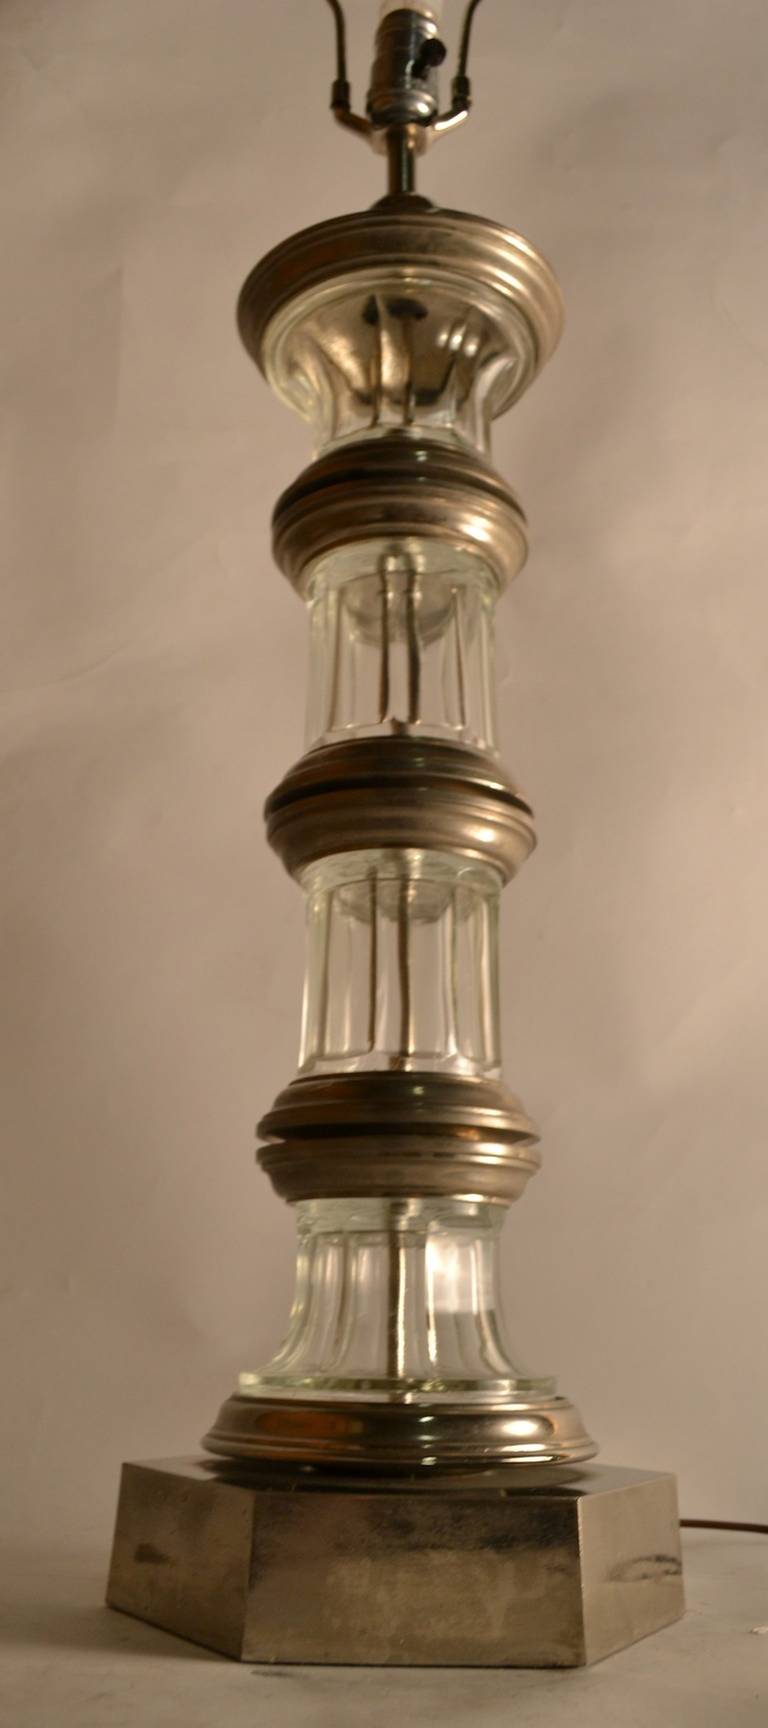 Säulenlampe aus Silber und Glas, Paul Hanson zugeschrieben. Elegantes Design und hohe Qualität. Original-Farbton vorhanden, aber so wie er ist.